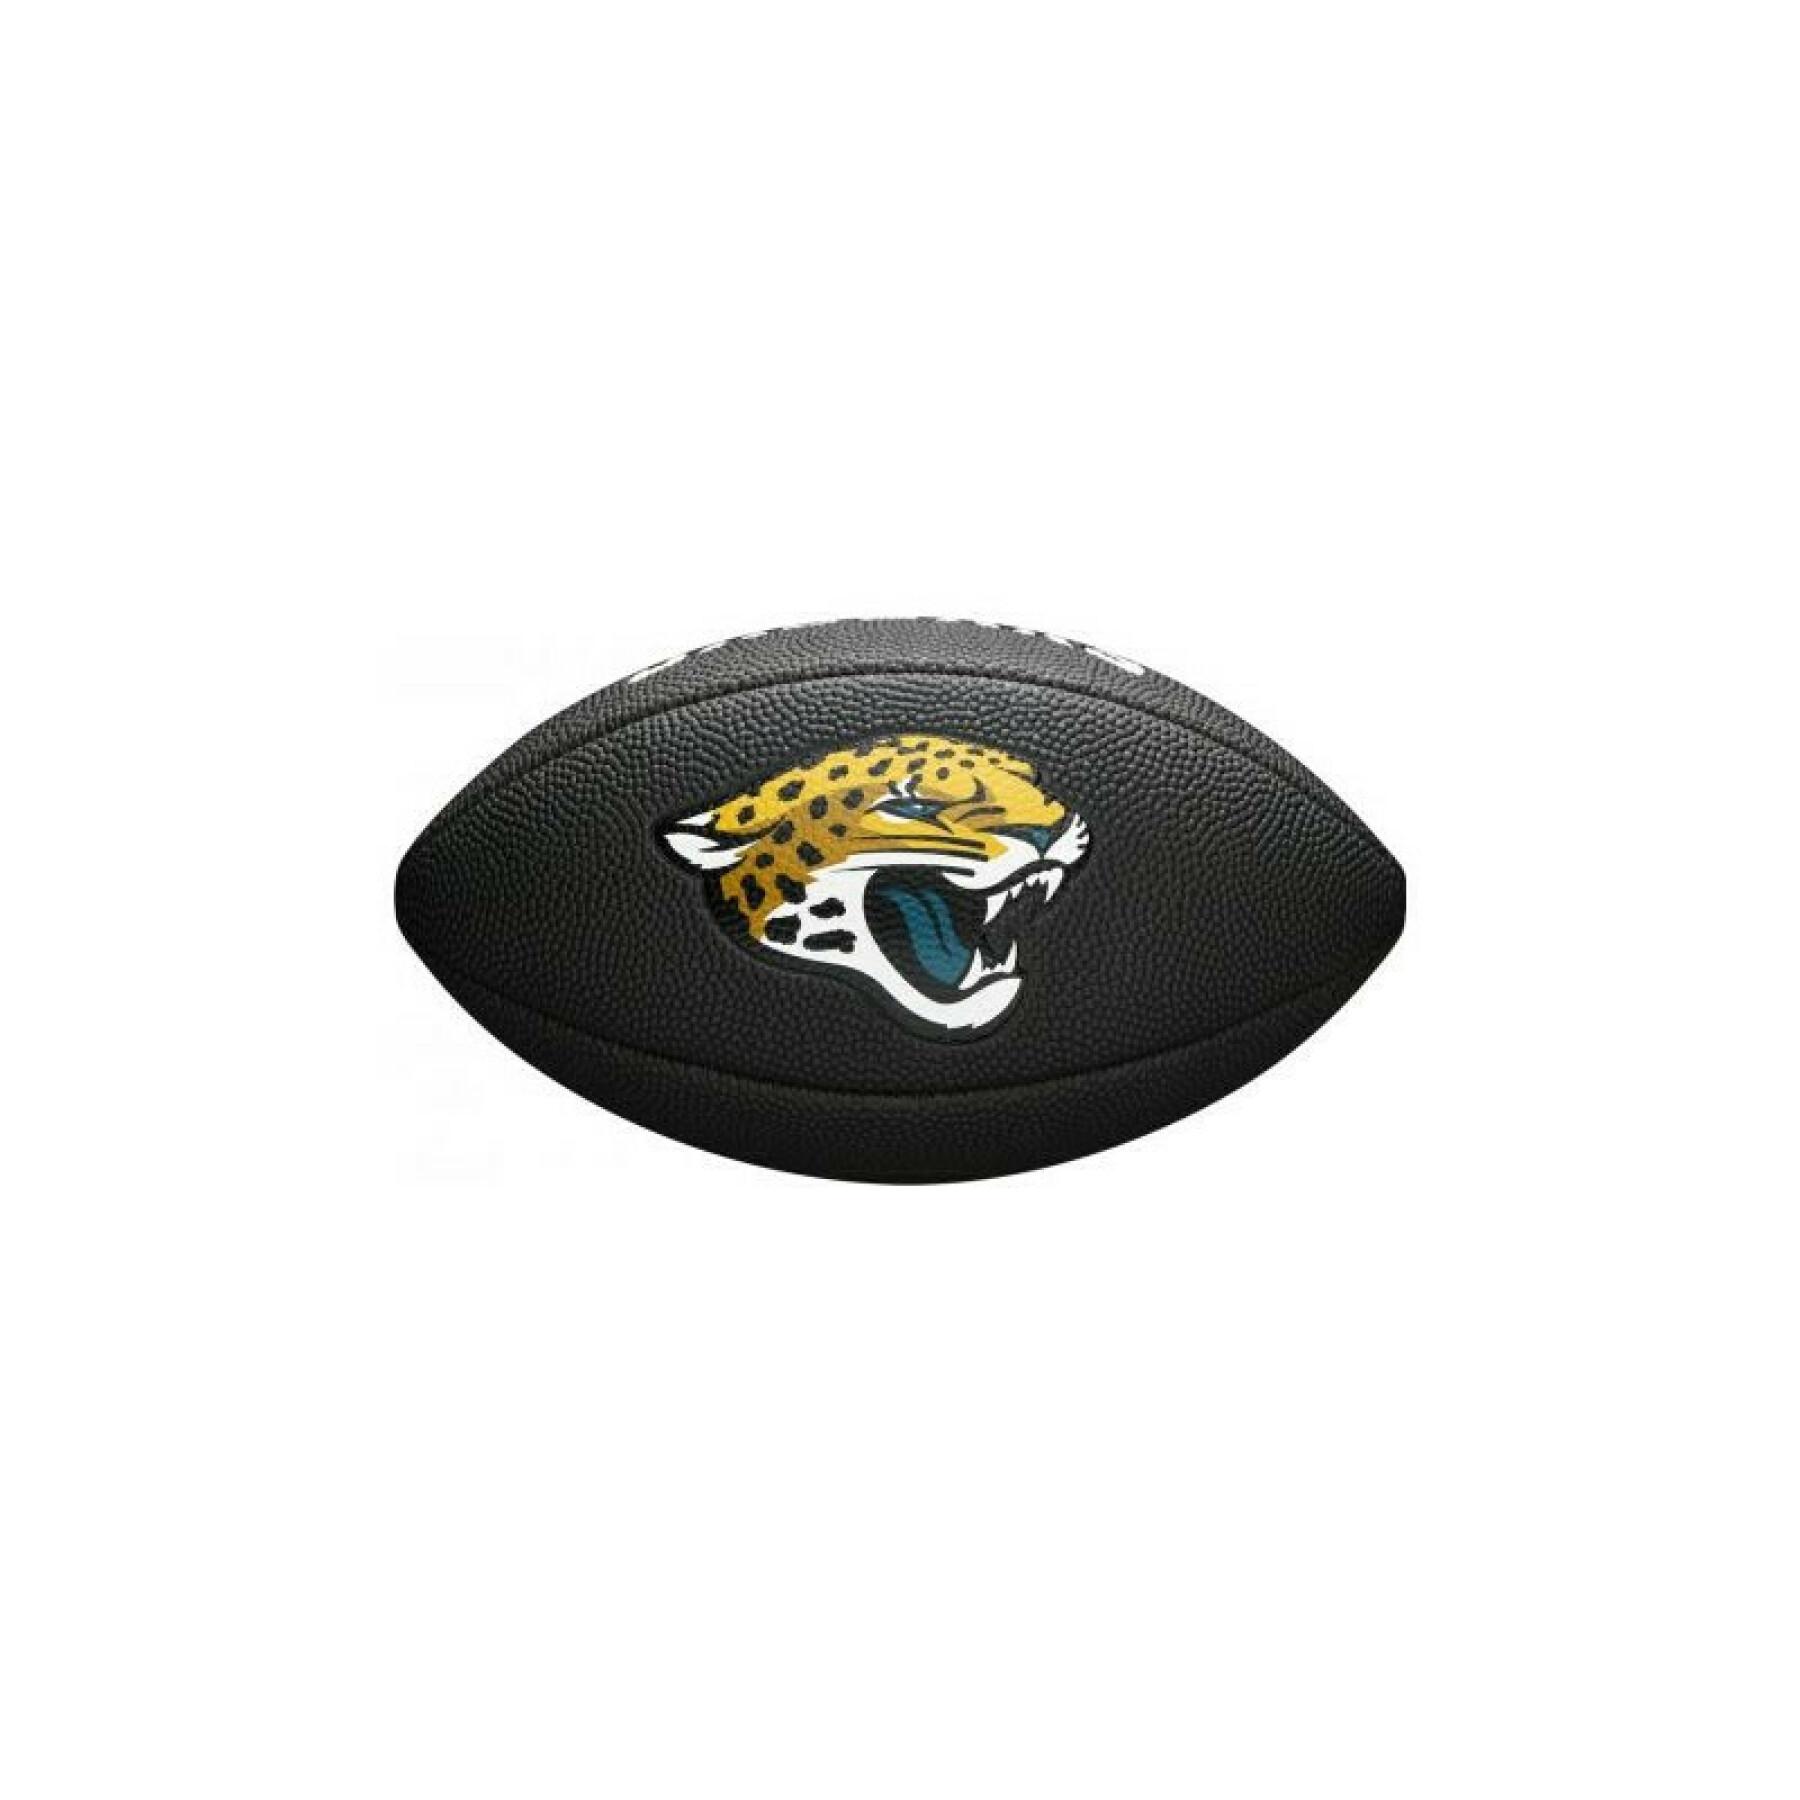 Mini bola para crianças Wilson Jaguars NFL